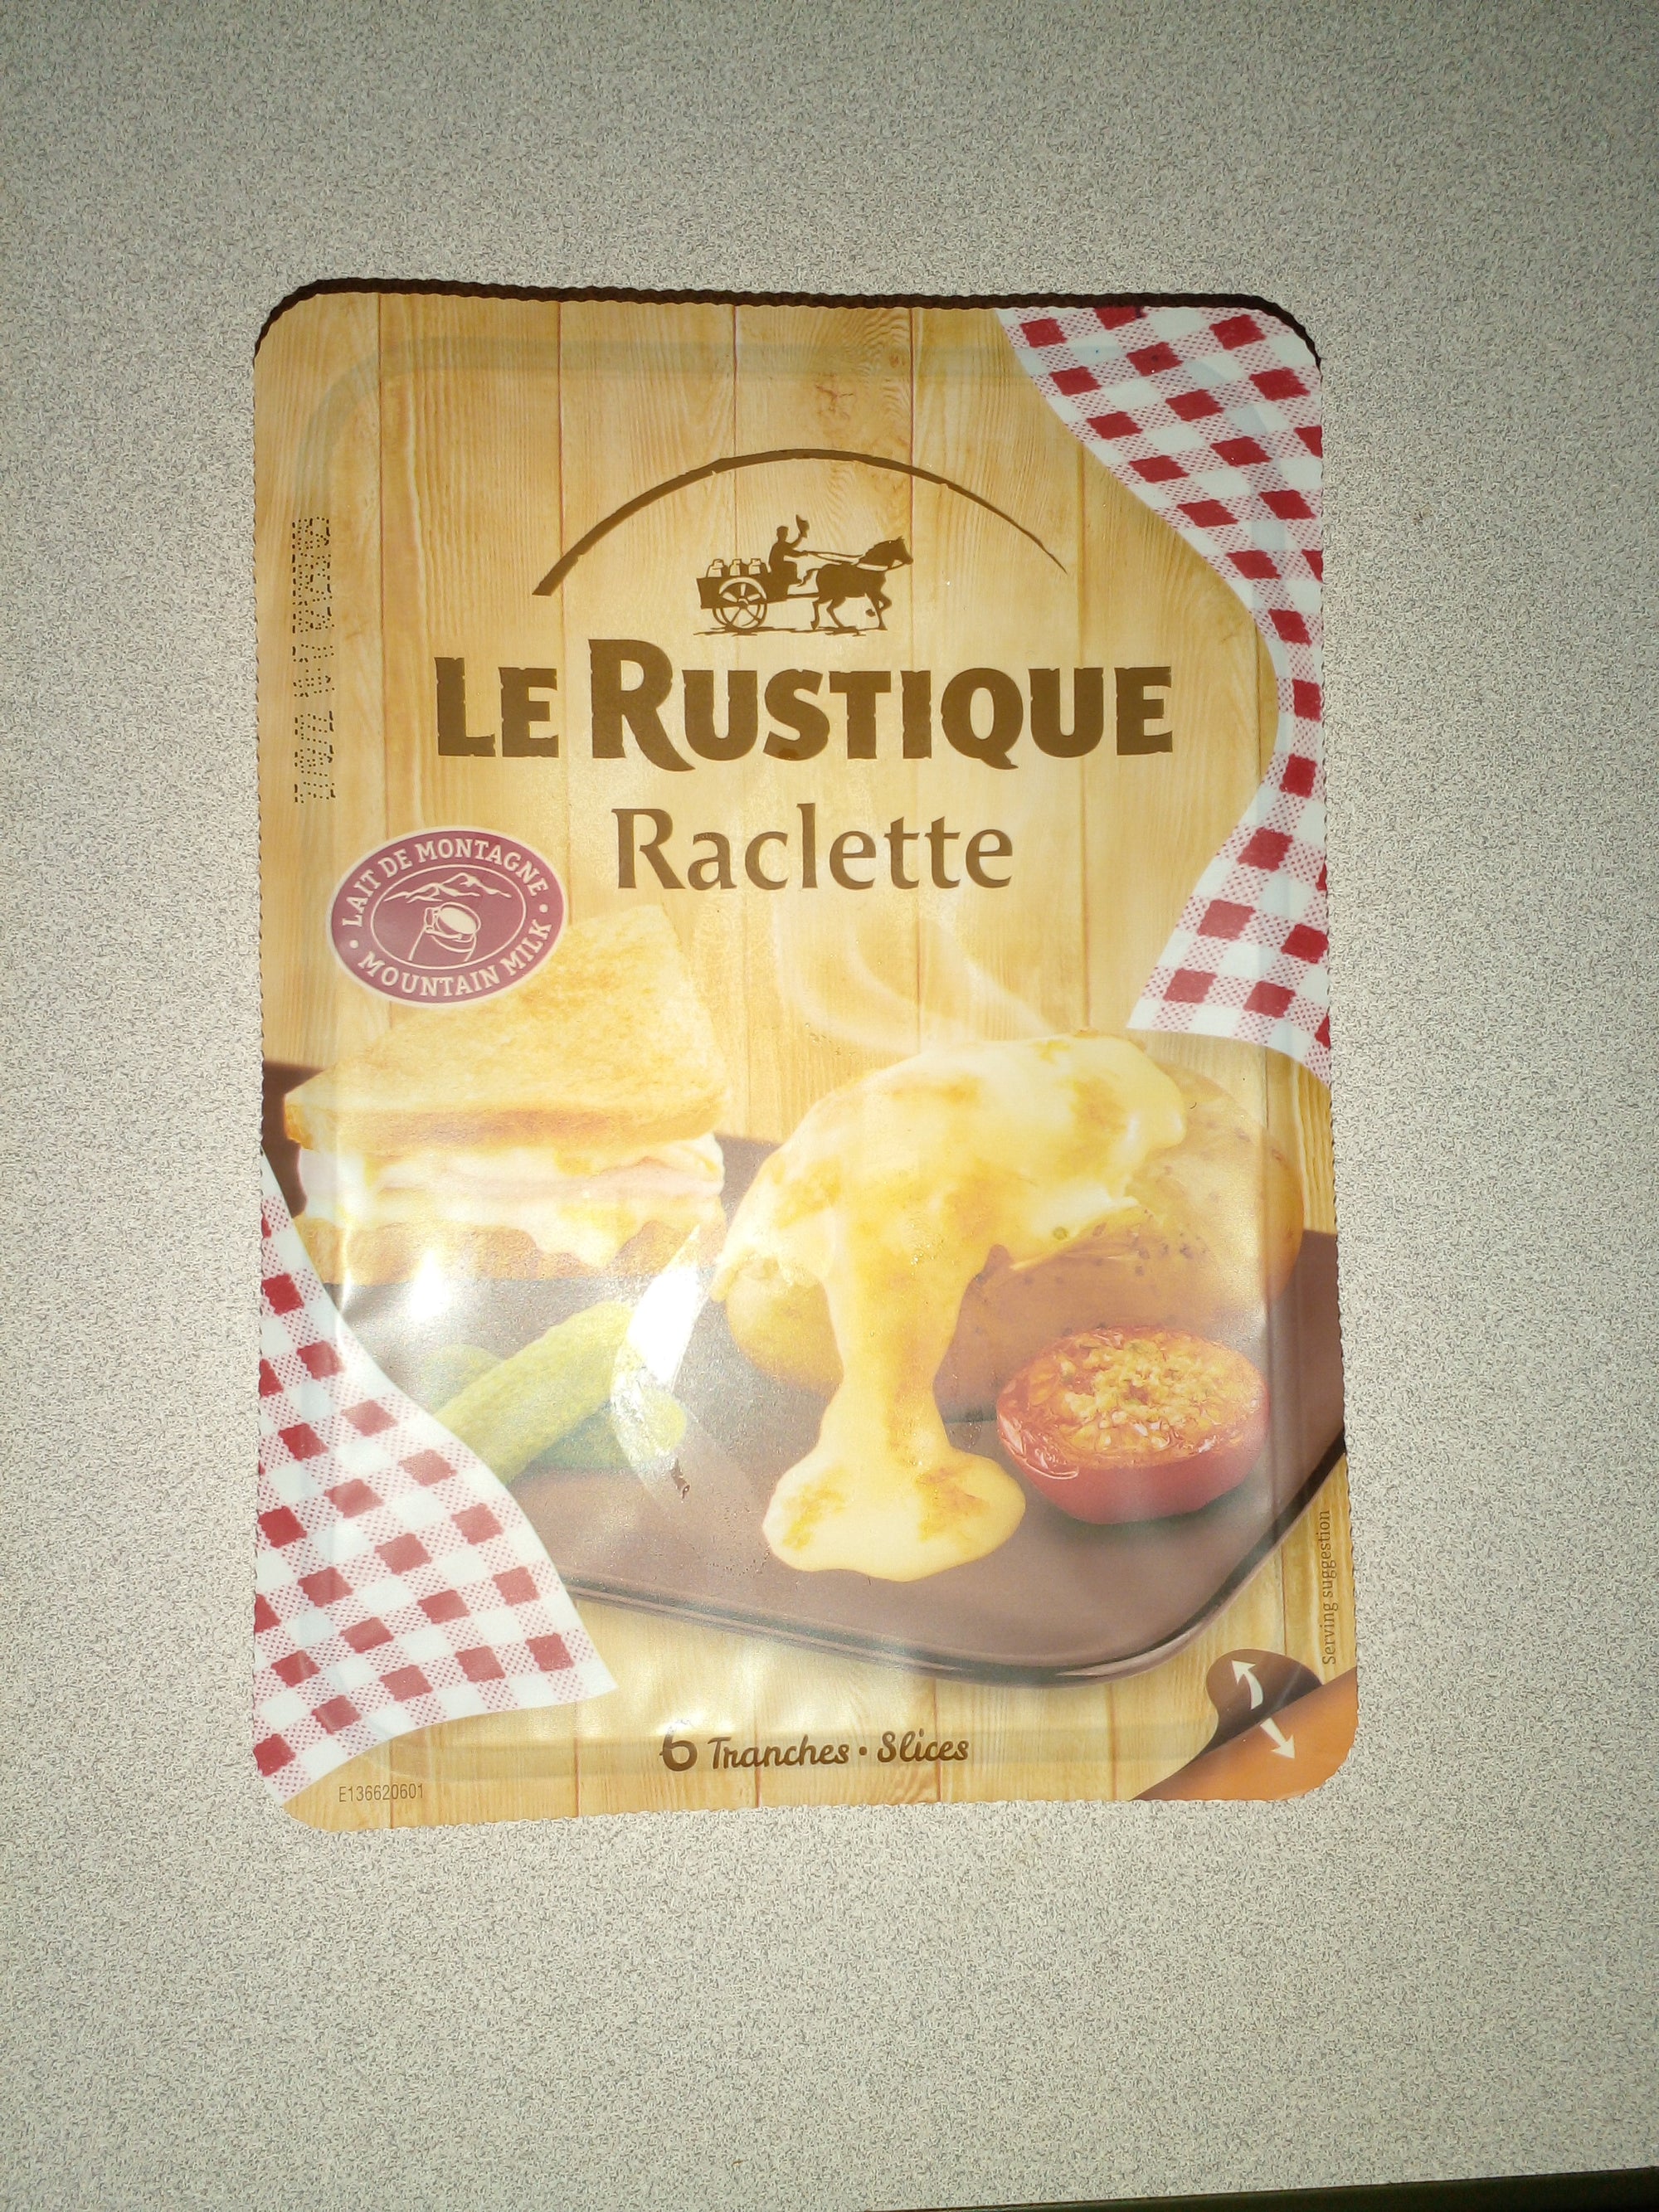 Le Rustique Raclette 140g